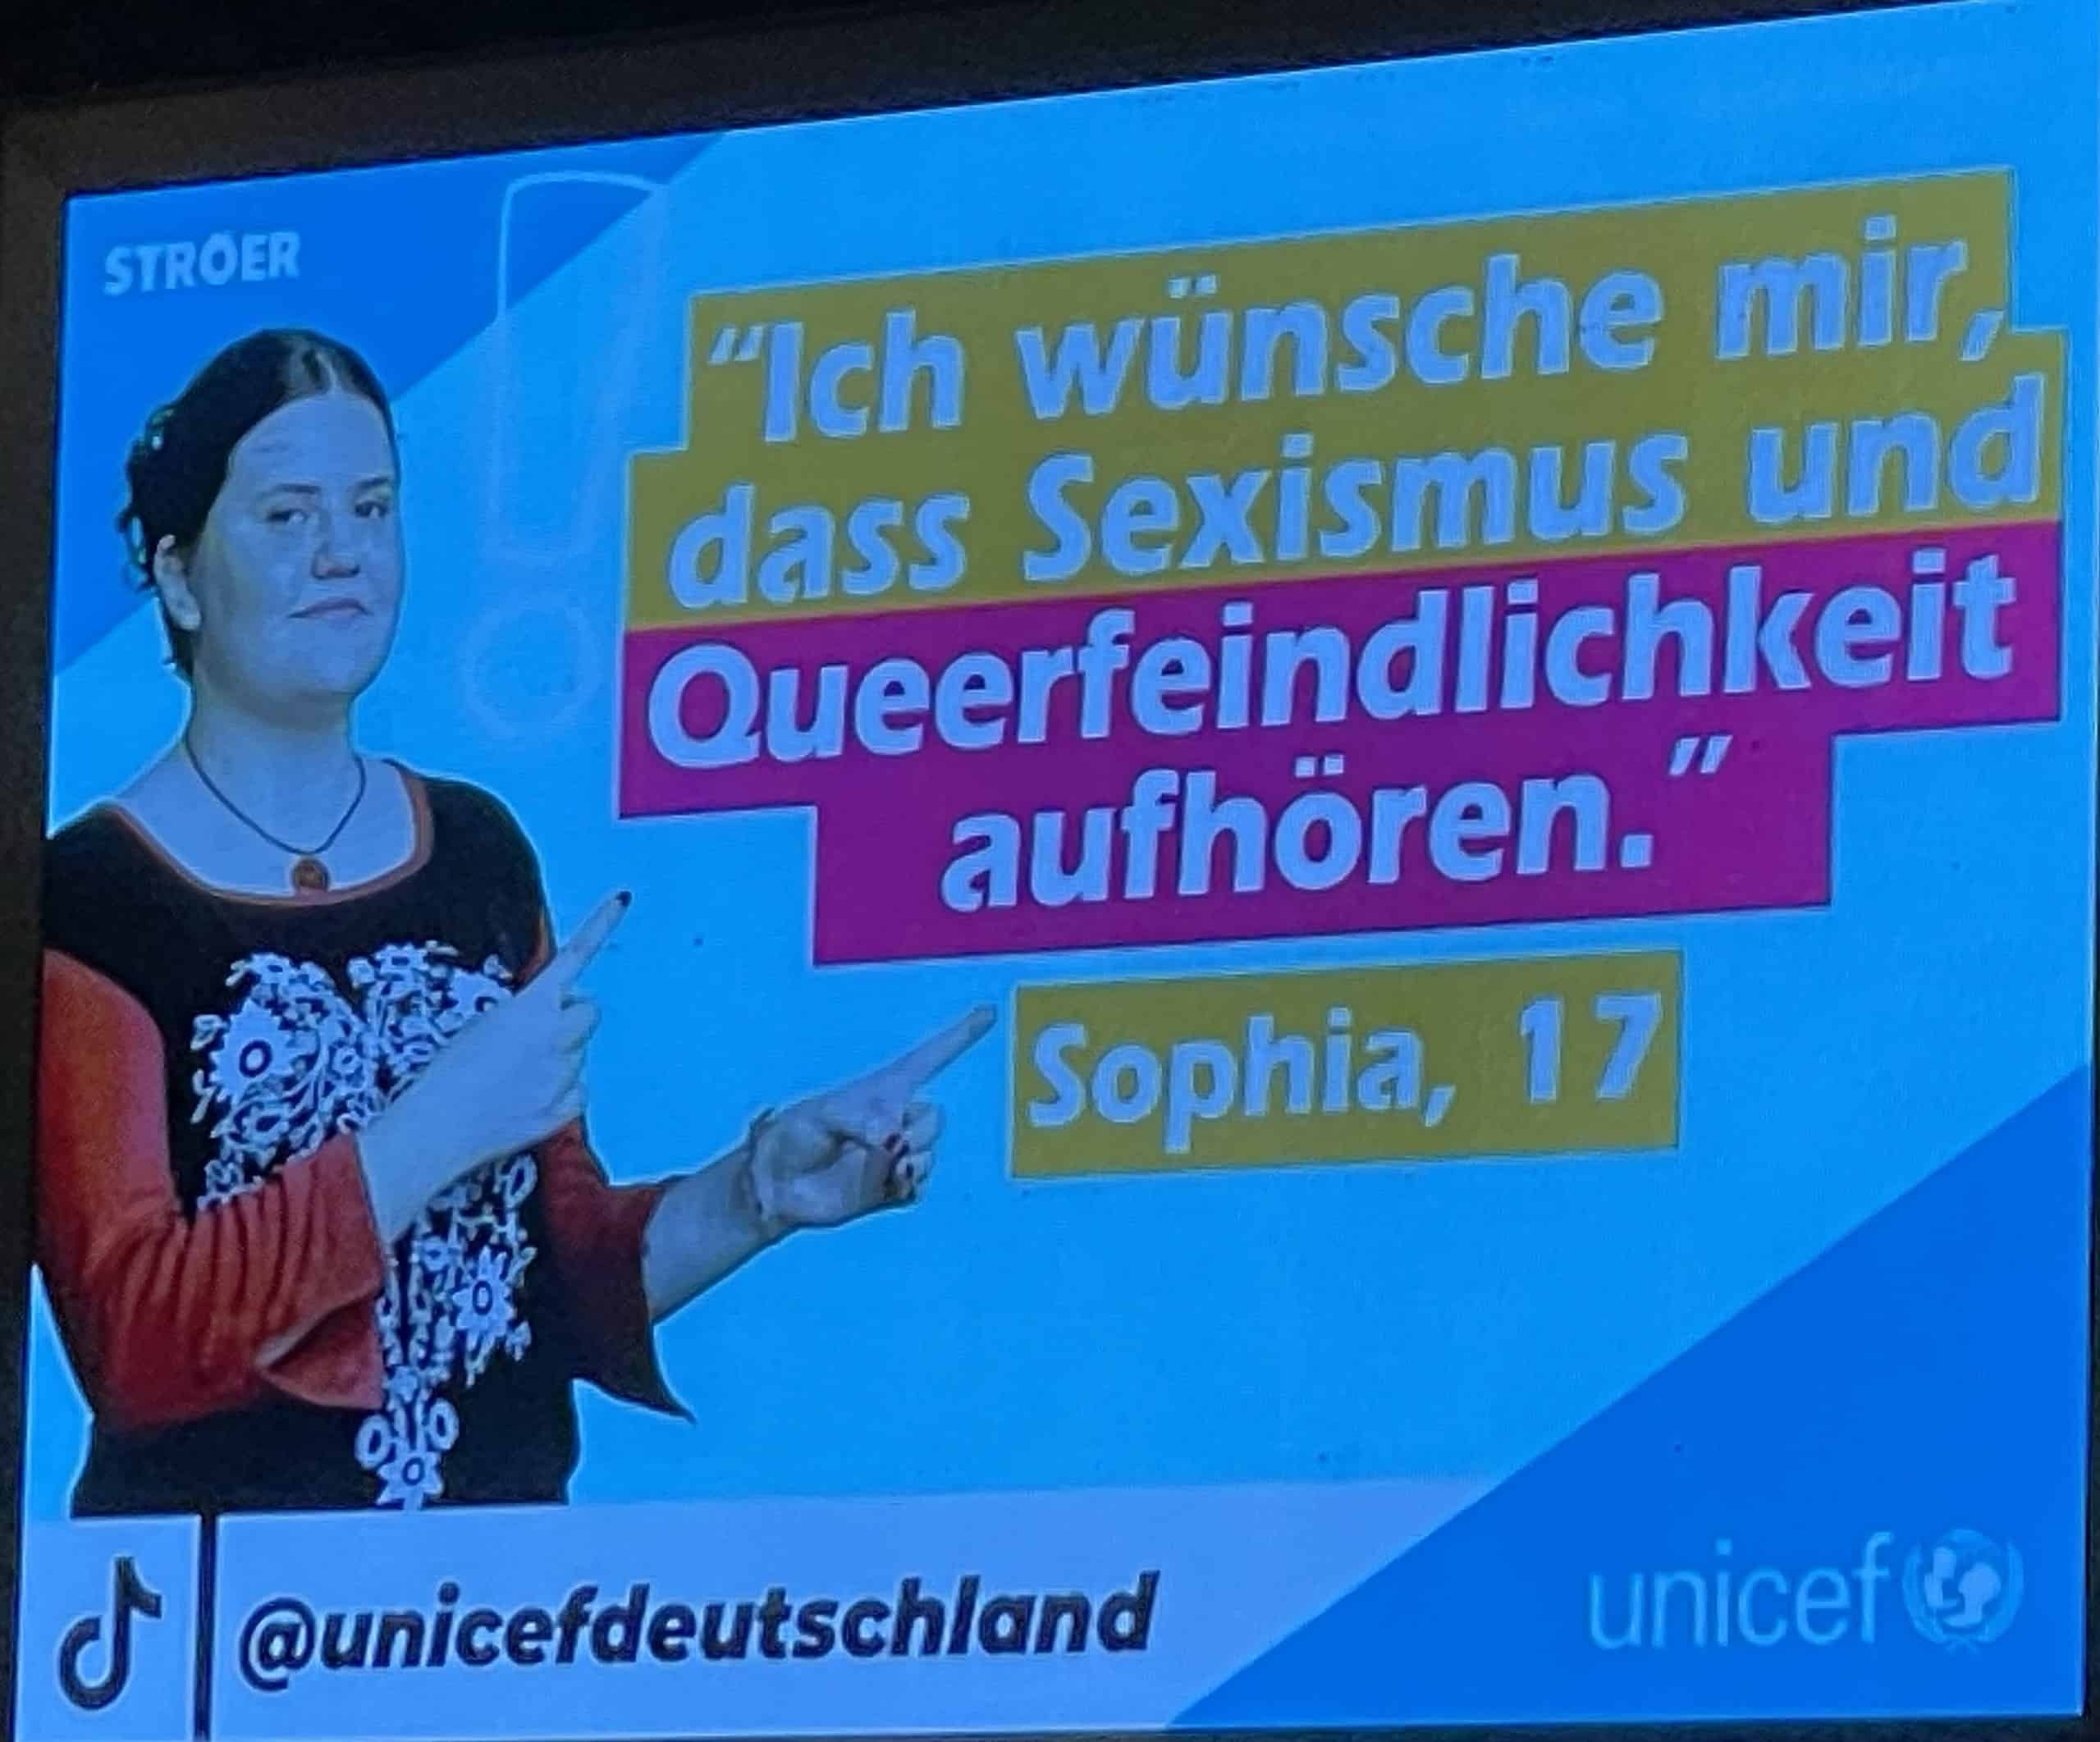 Unicef-Infotafel mit Queerenfeindlichkeitszitat.